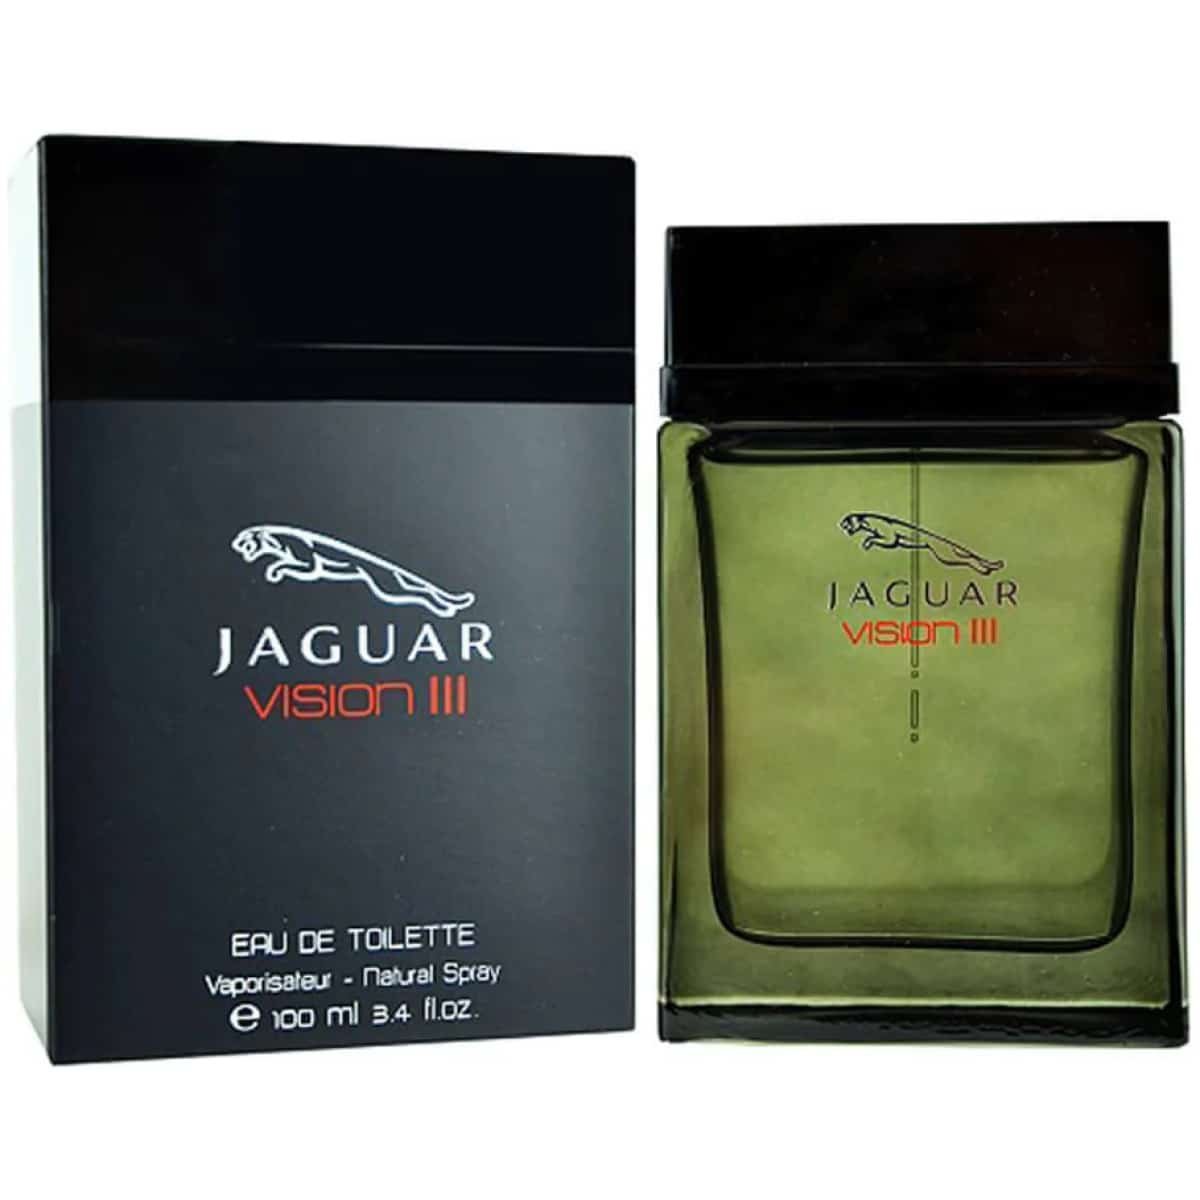 Jaguar Vision III EDT Perfume For Men 100 ml